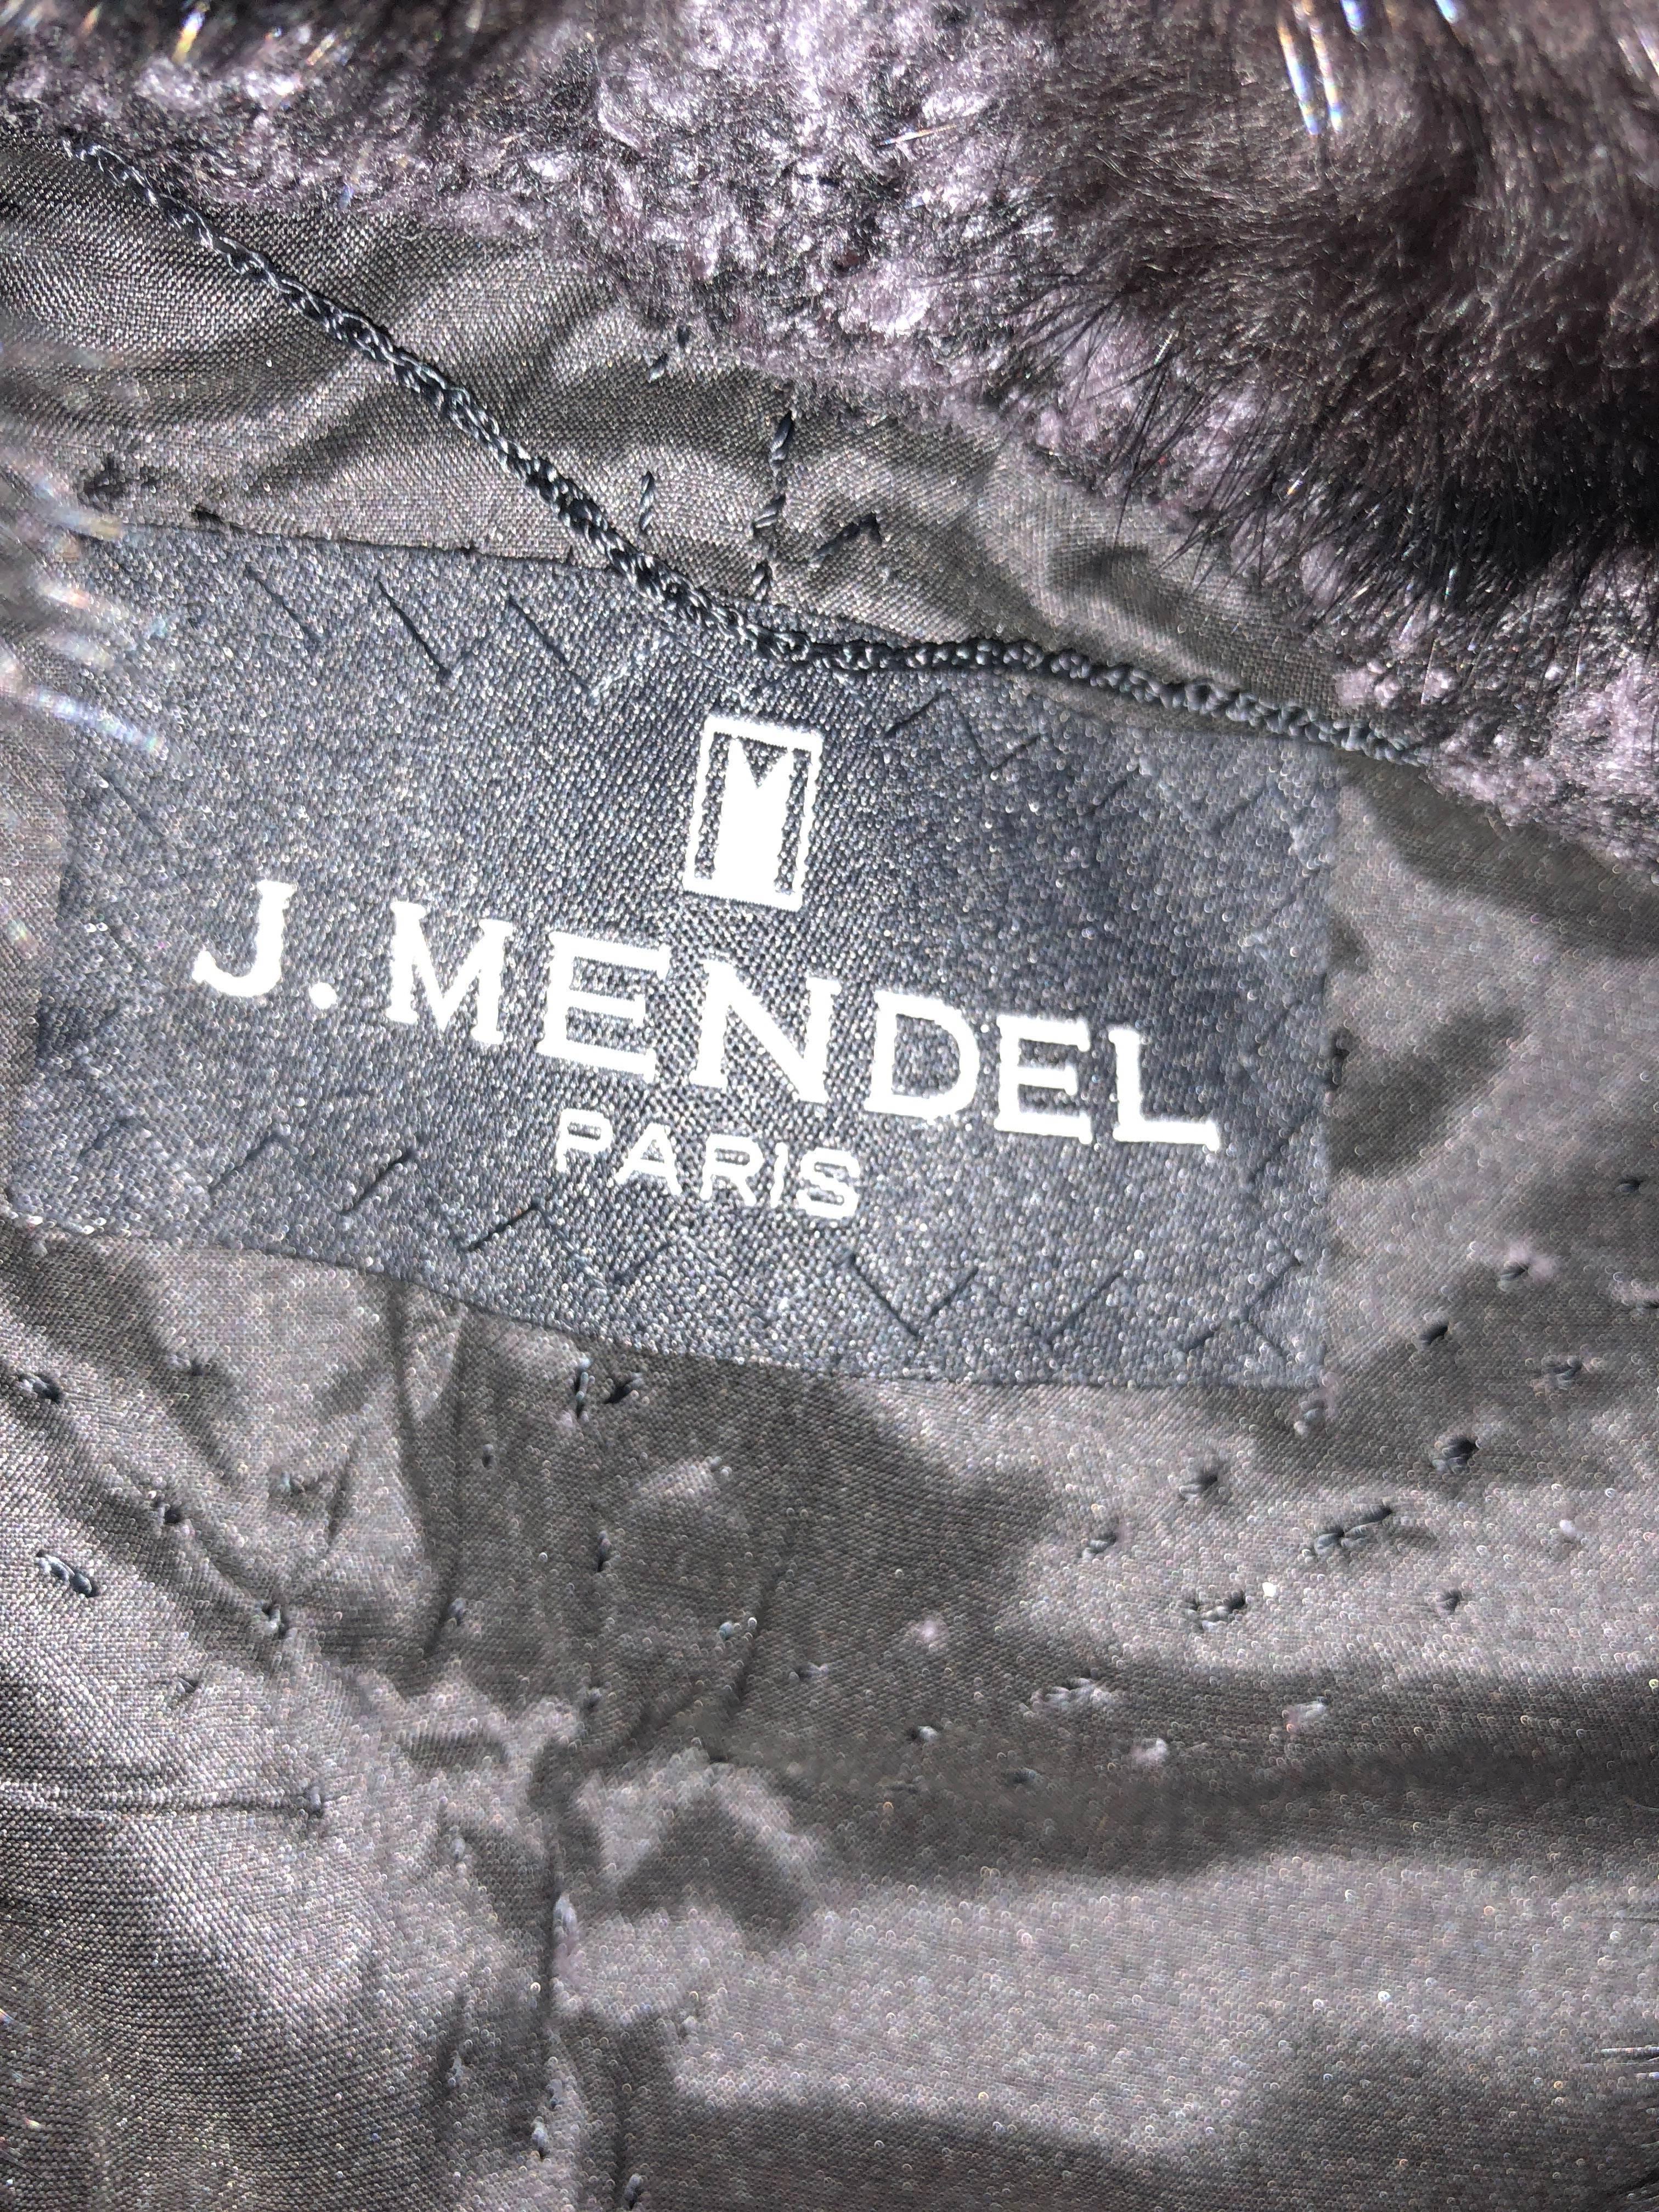 J. Mendel Paris Bead Embellished Tweed Belted Jacket with Fur Collar and Belt For Sale 2